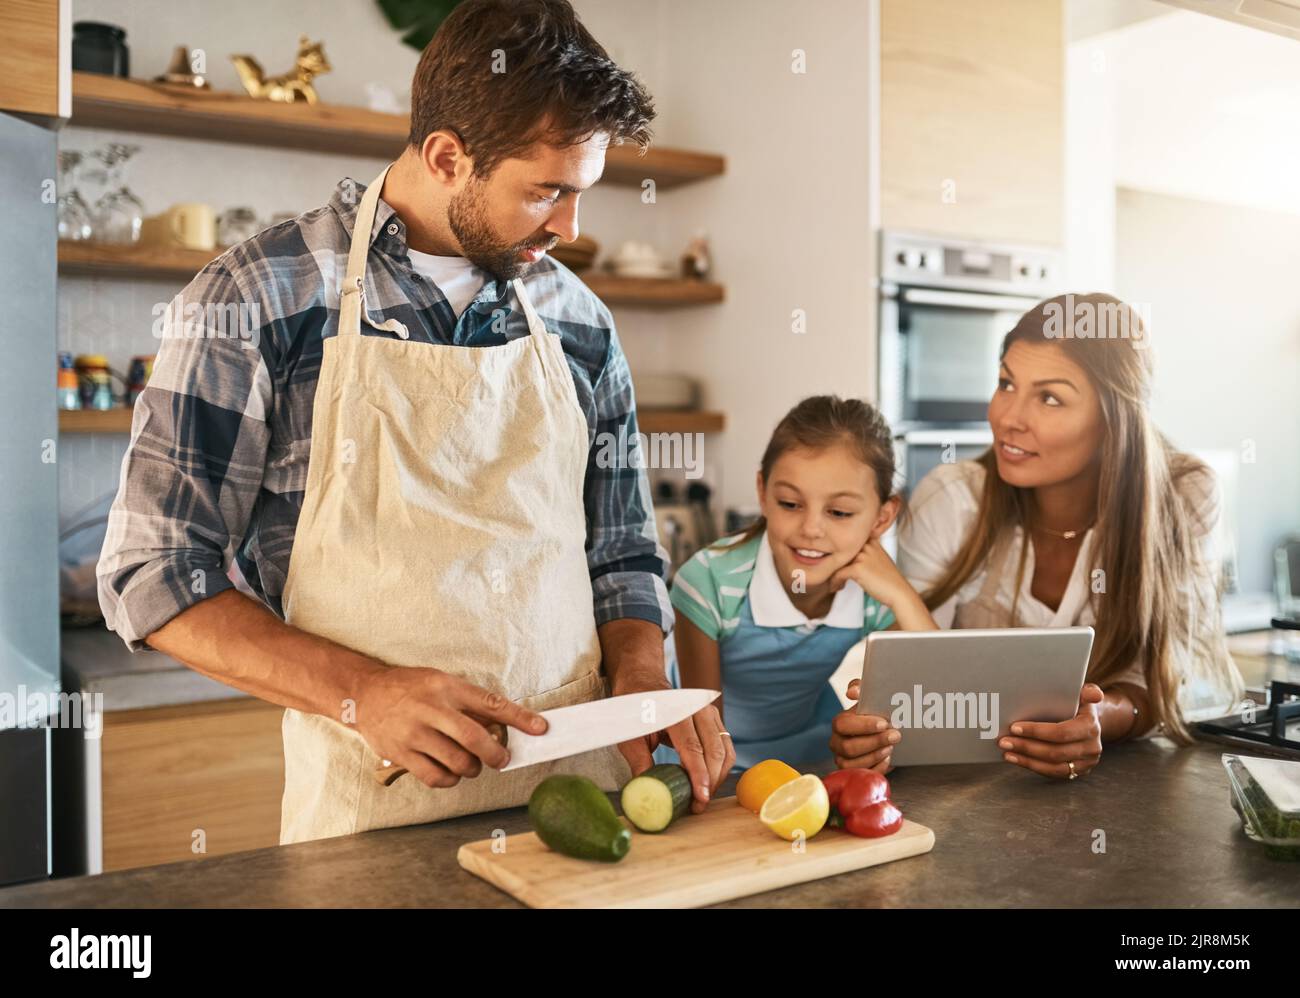 Los cuchillos son para adultos solamente, está bien. Dos padres felices y su hija pequeña probando una nueva receta juntos en la cocina. Foto de stock